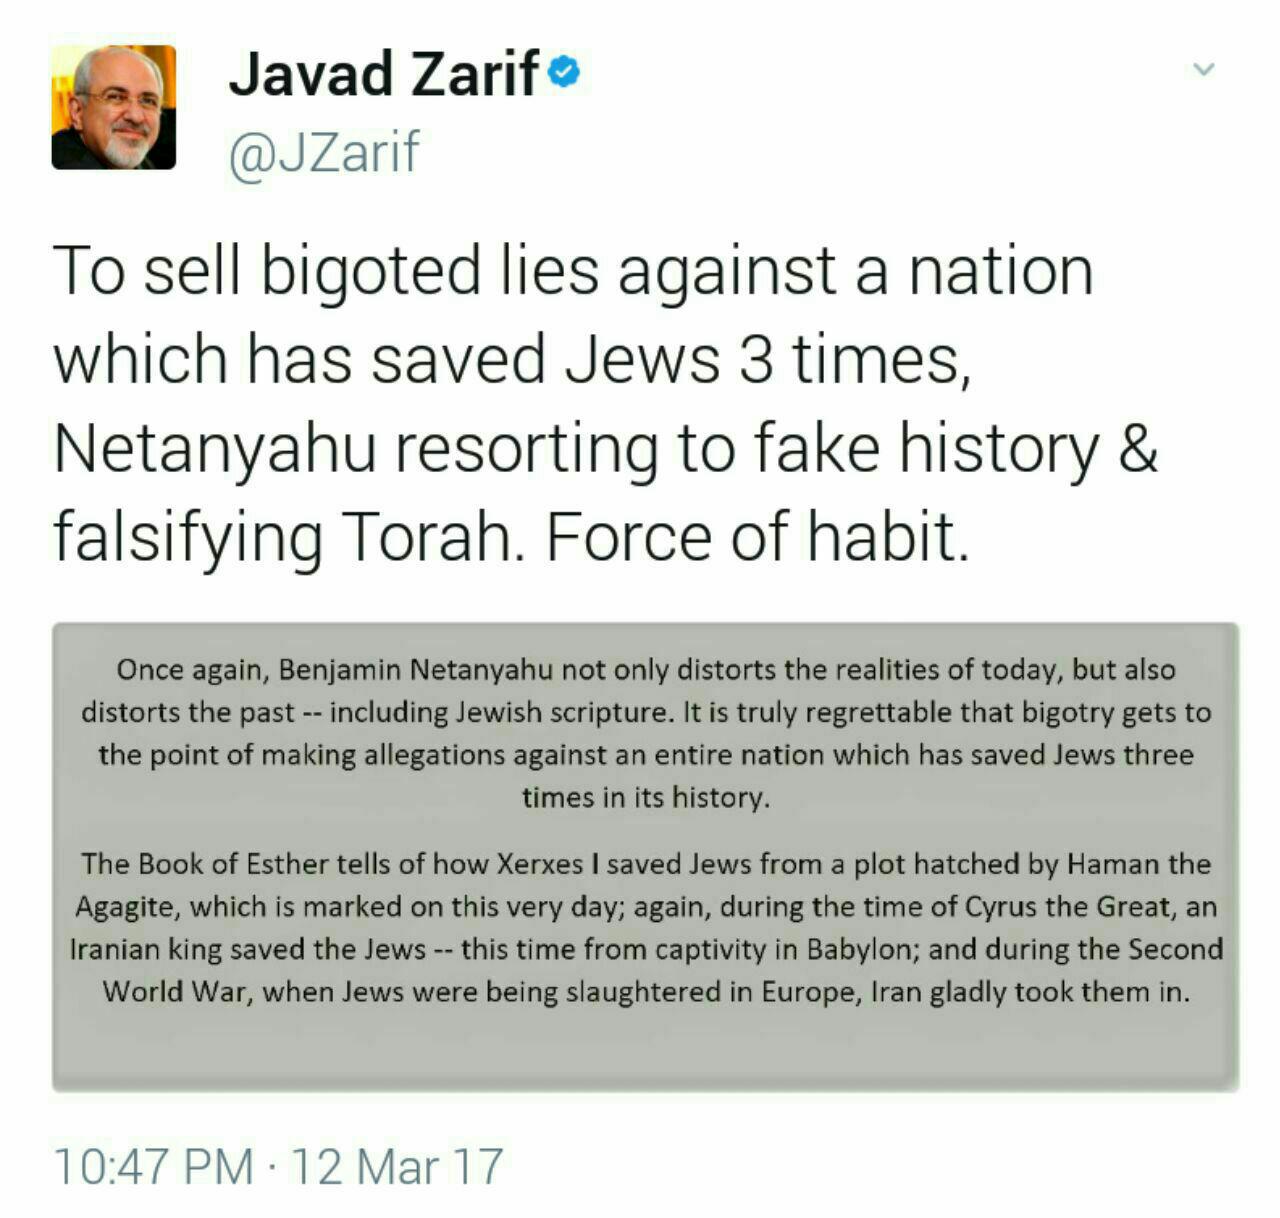 Le Ministre des Affaires étrangères Mohammad Javad Zarif a réagi aux récents propos du Premier ministre du régime sioniste